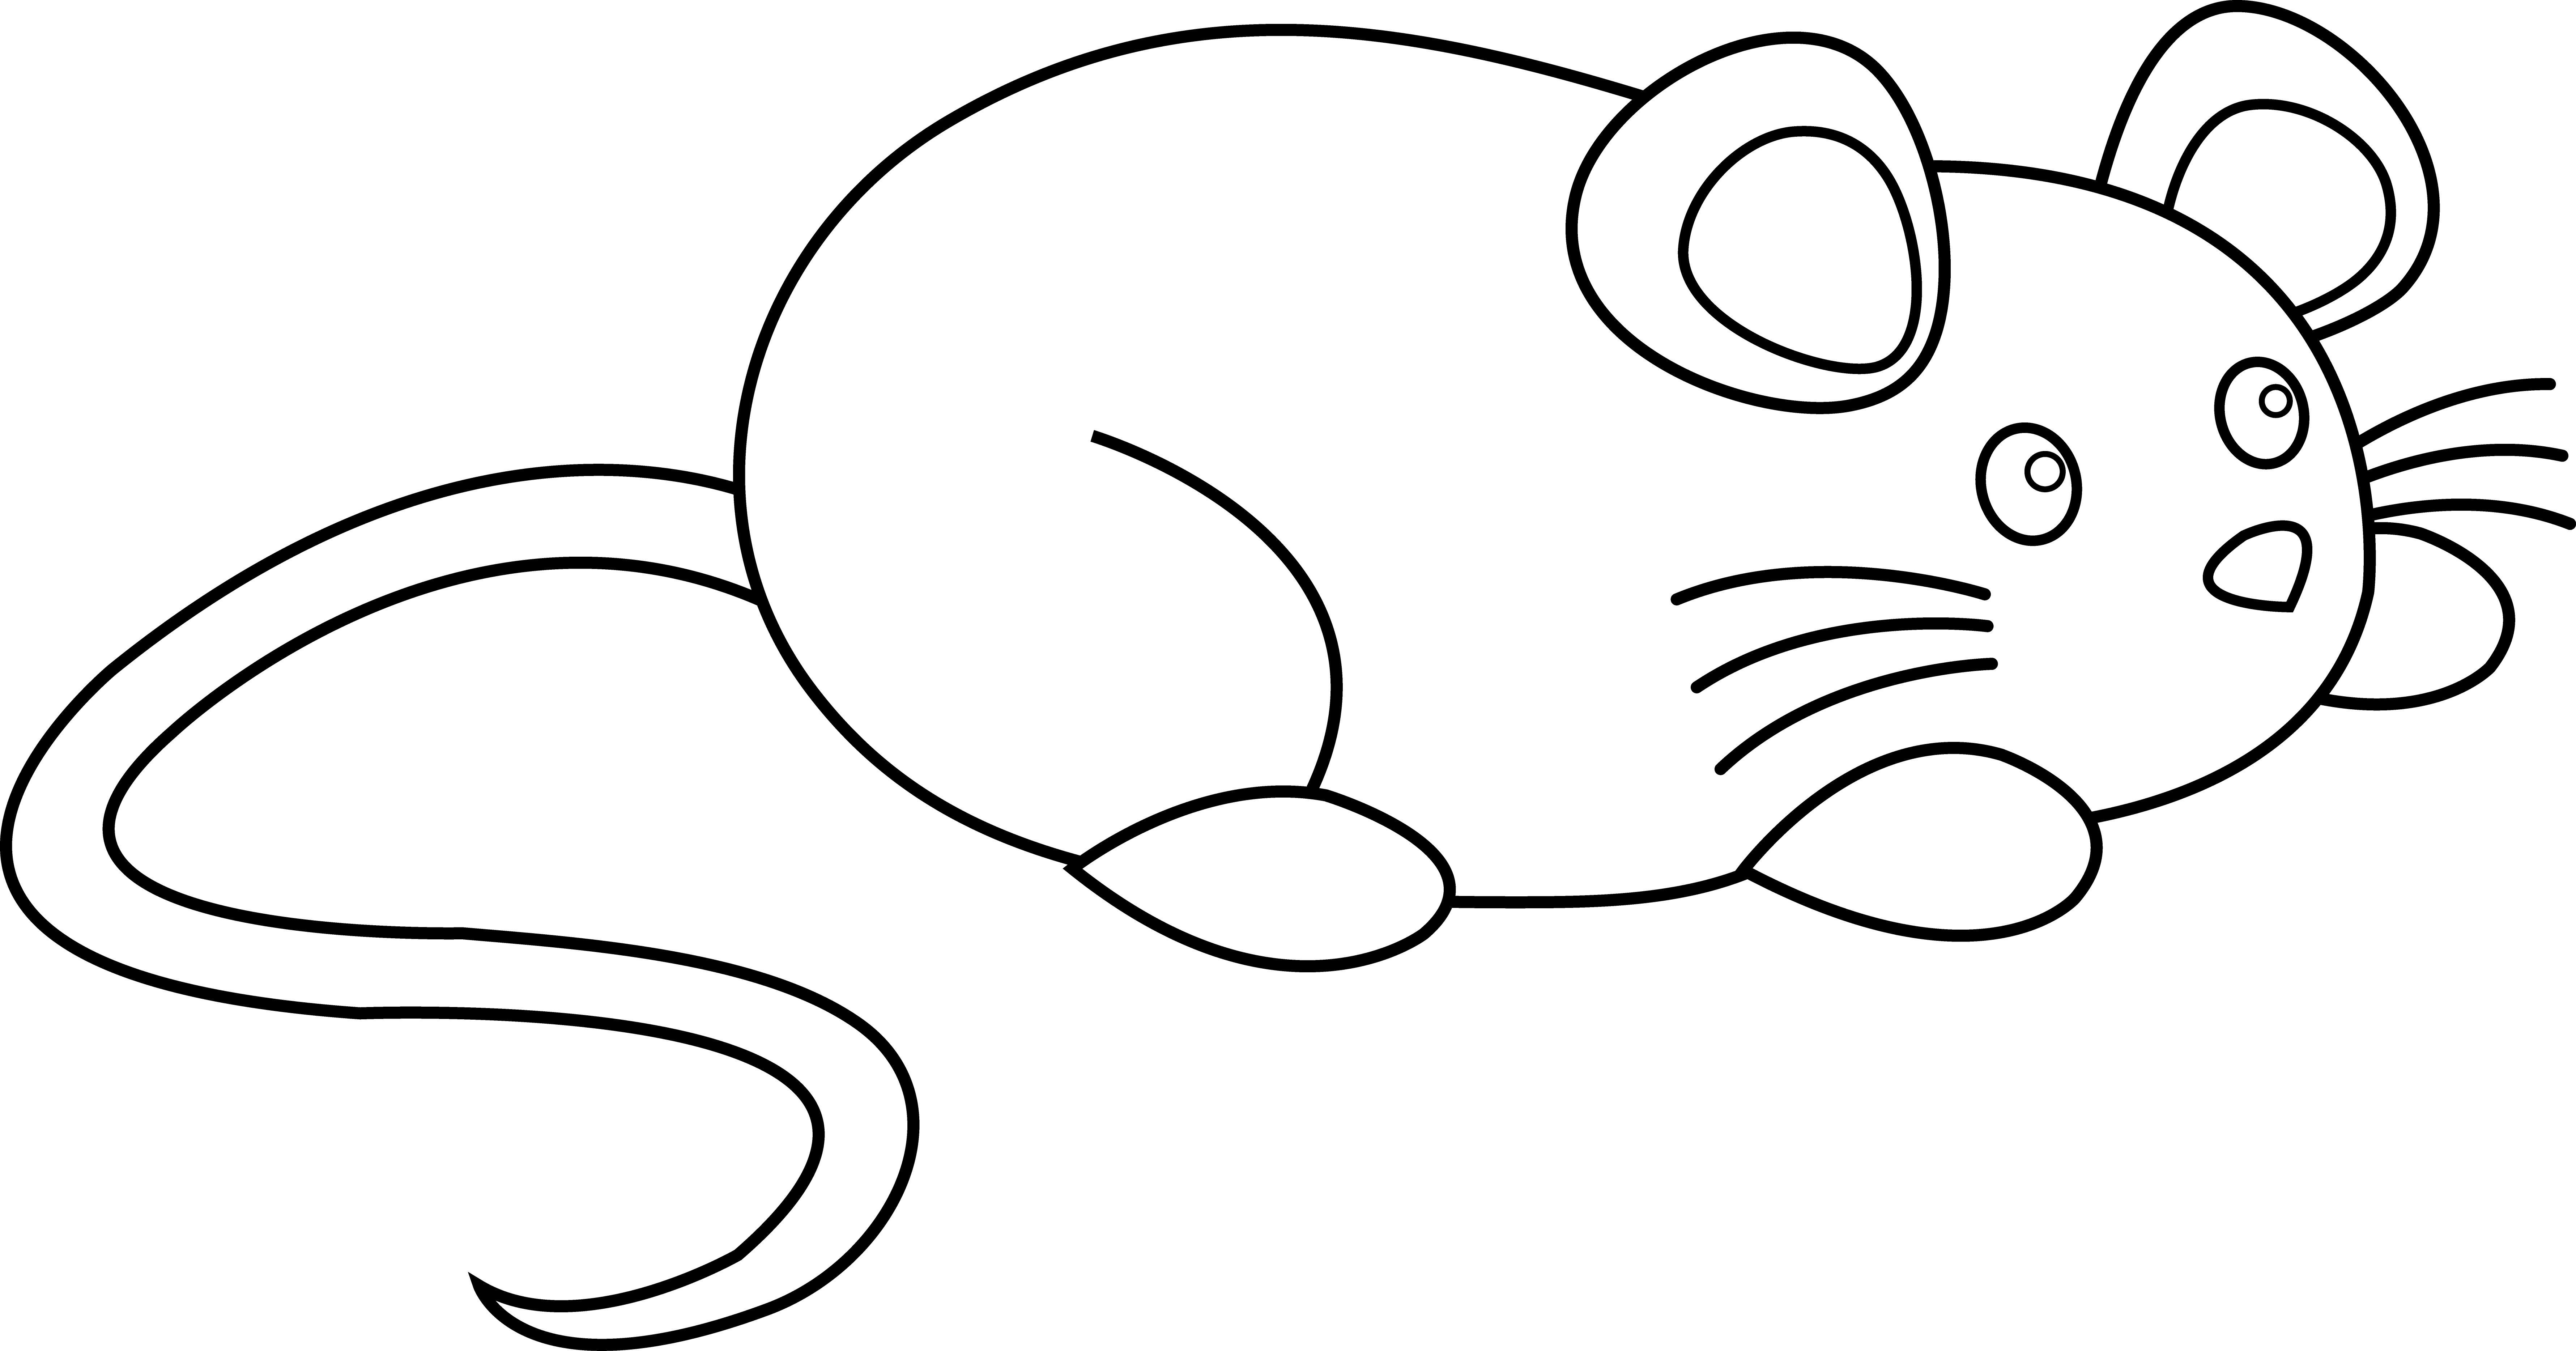 Cute Mouse Line Art - Free Clip Art